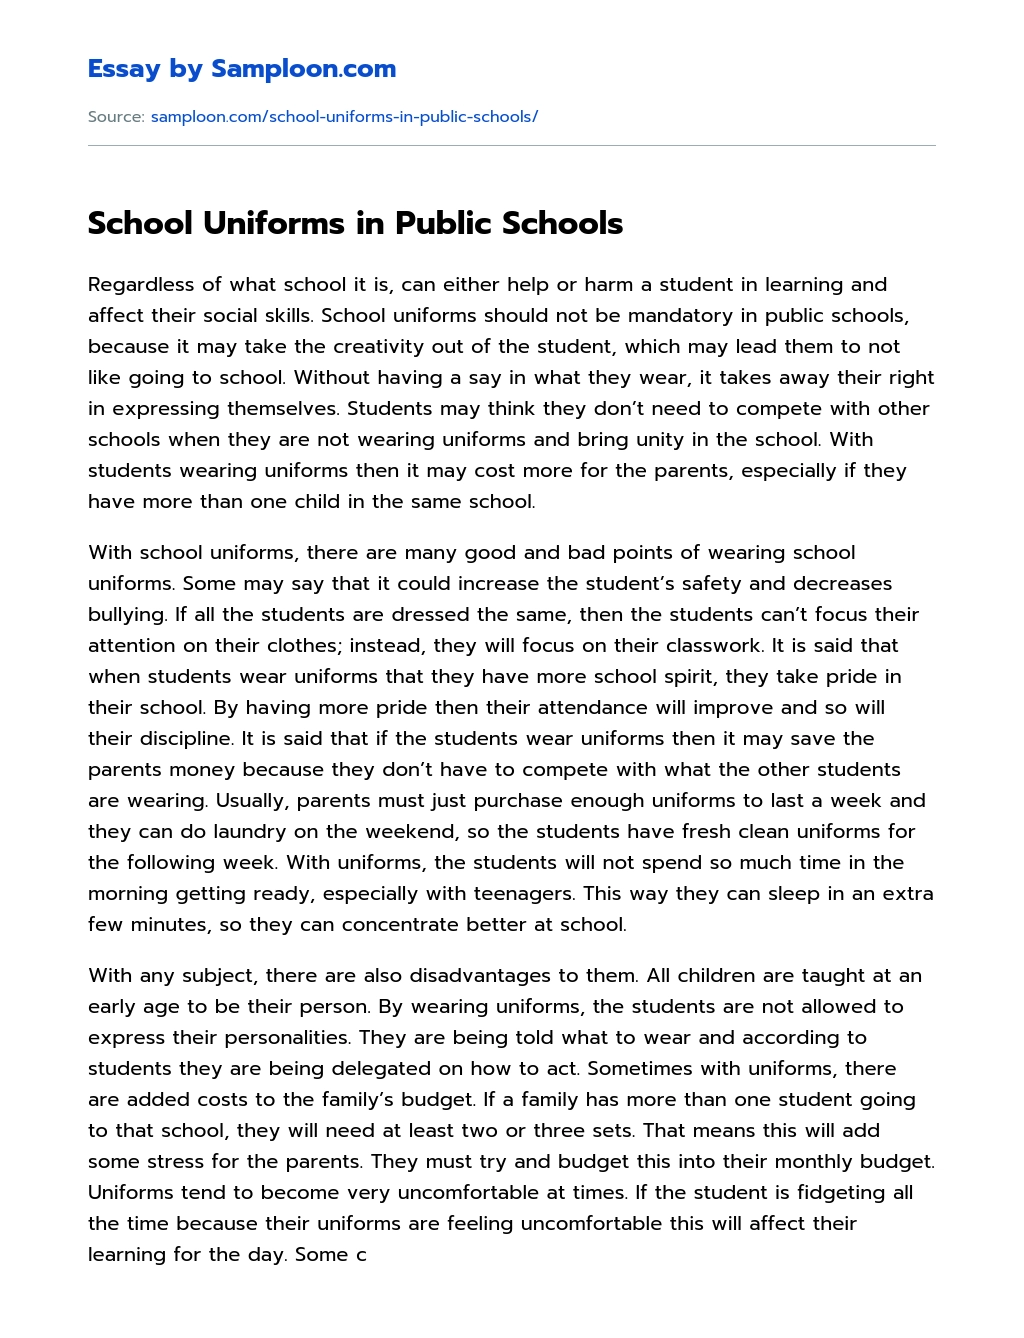 School Uniforms in Public Schools essay